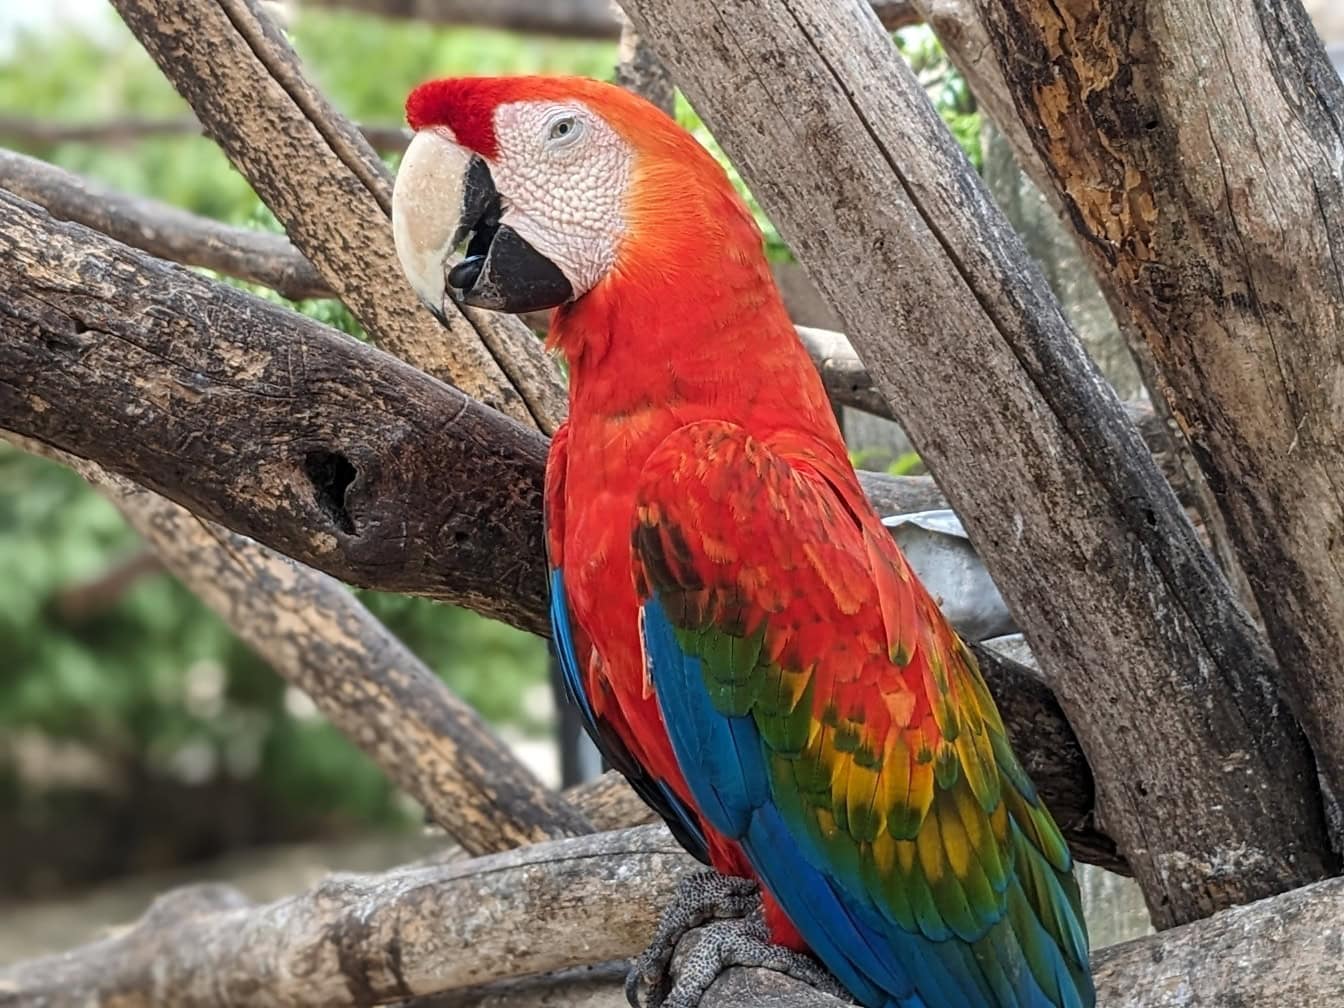 Червеният папагал ара на клон на дърво (Ara macao) голям екзотичен неотропичен папагал, роден в тропическите гори на Америка